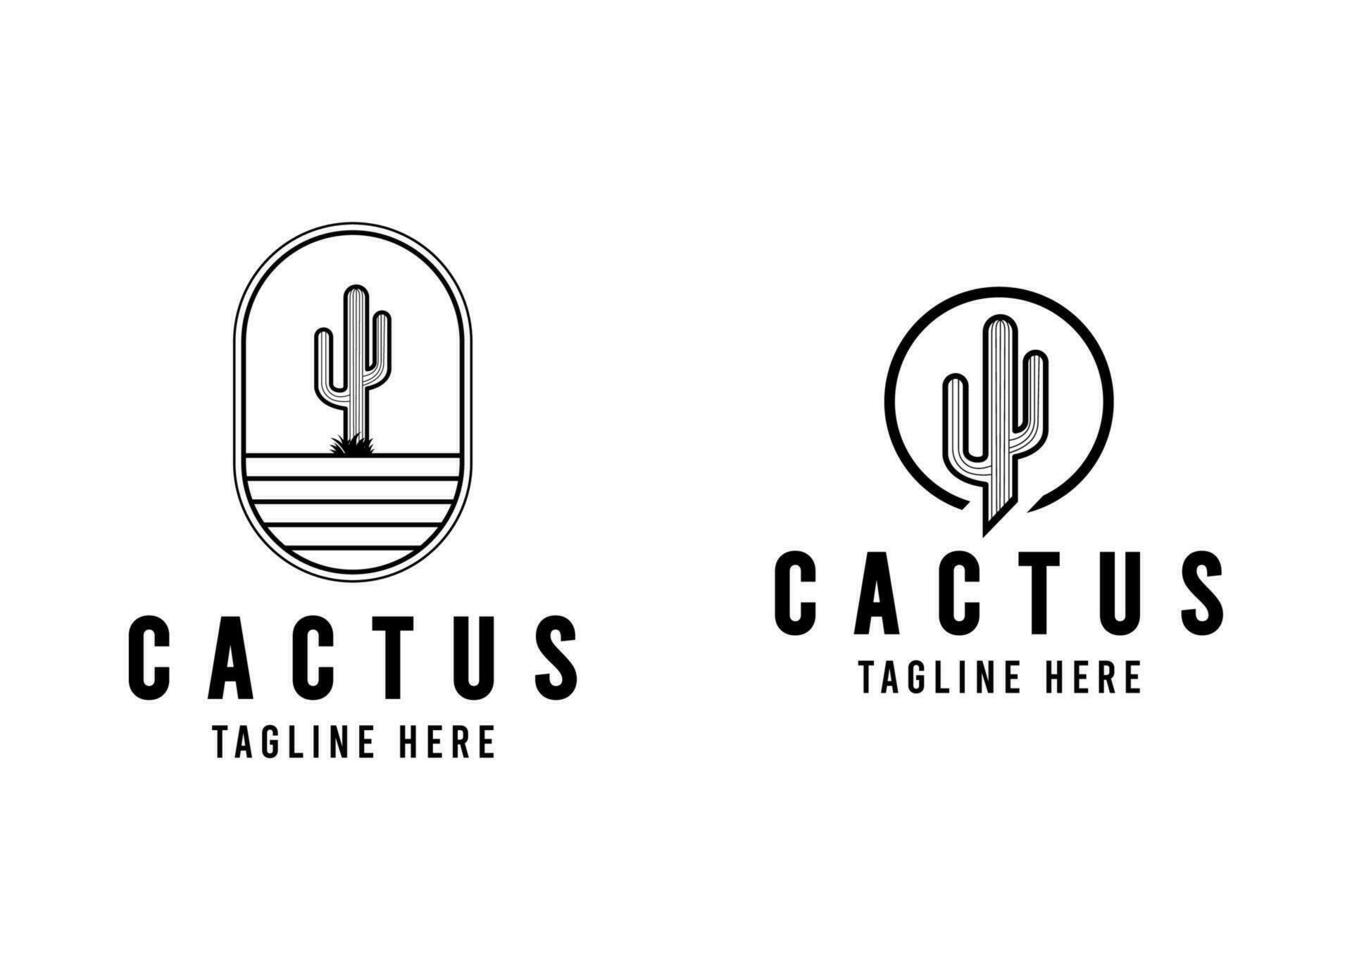 cactus illustratie wild west ontwerp woestijn wijnoogst vector